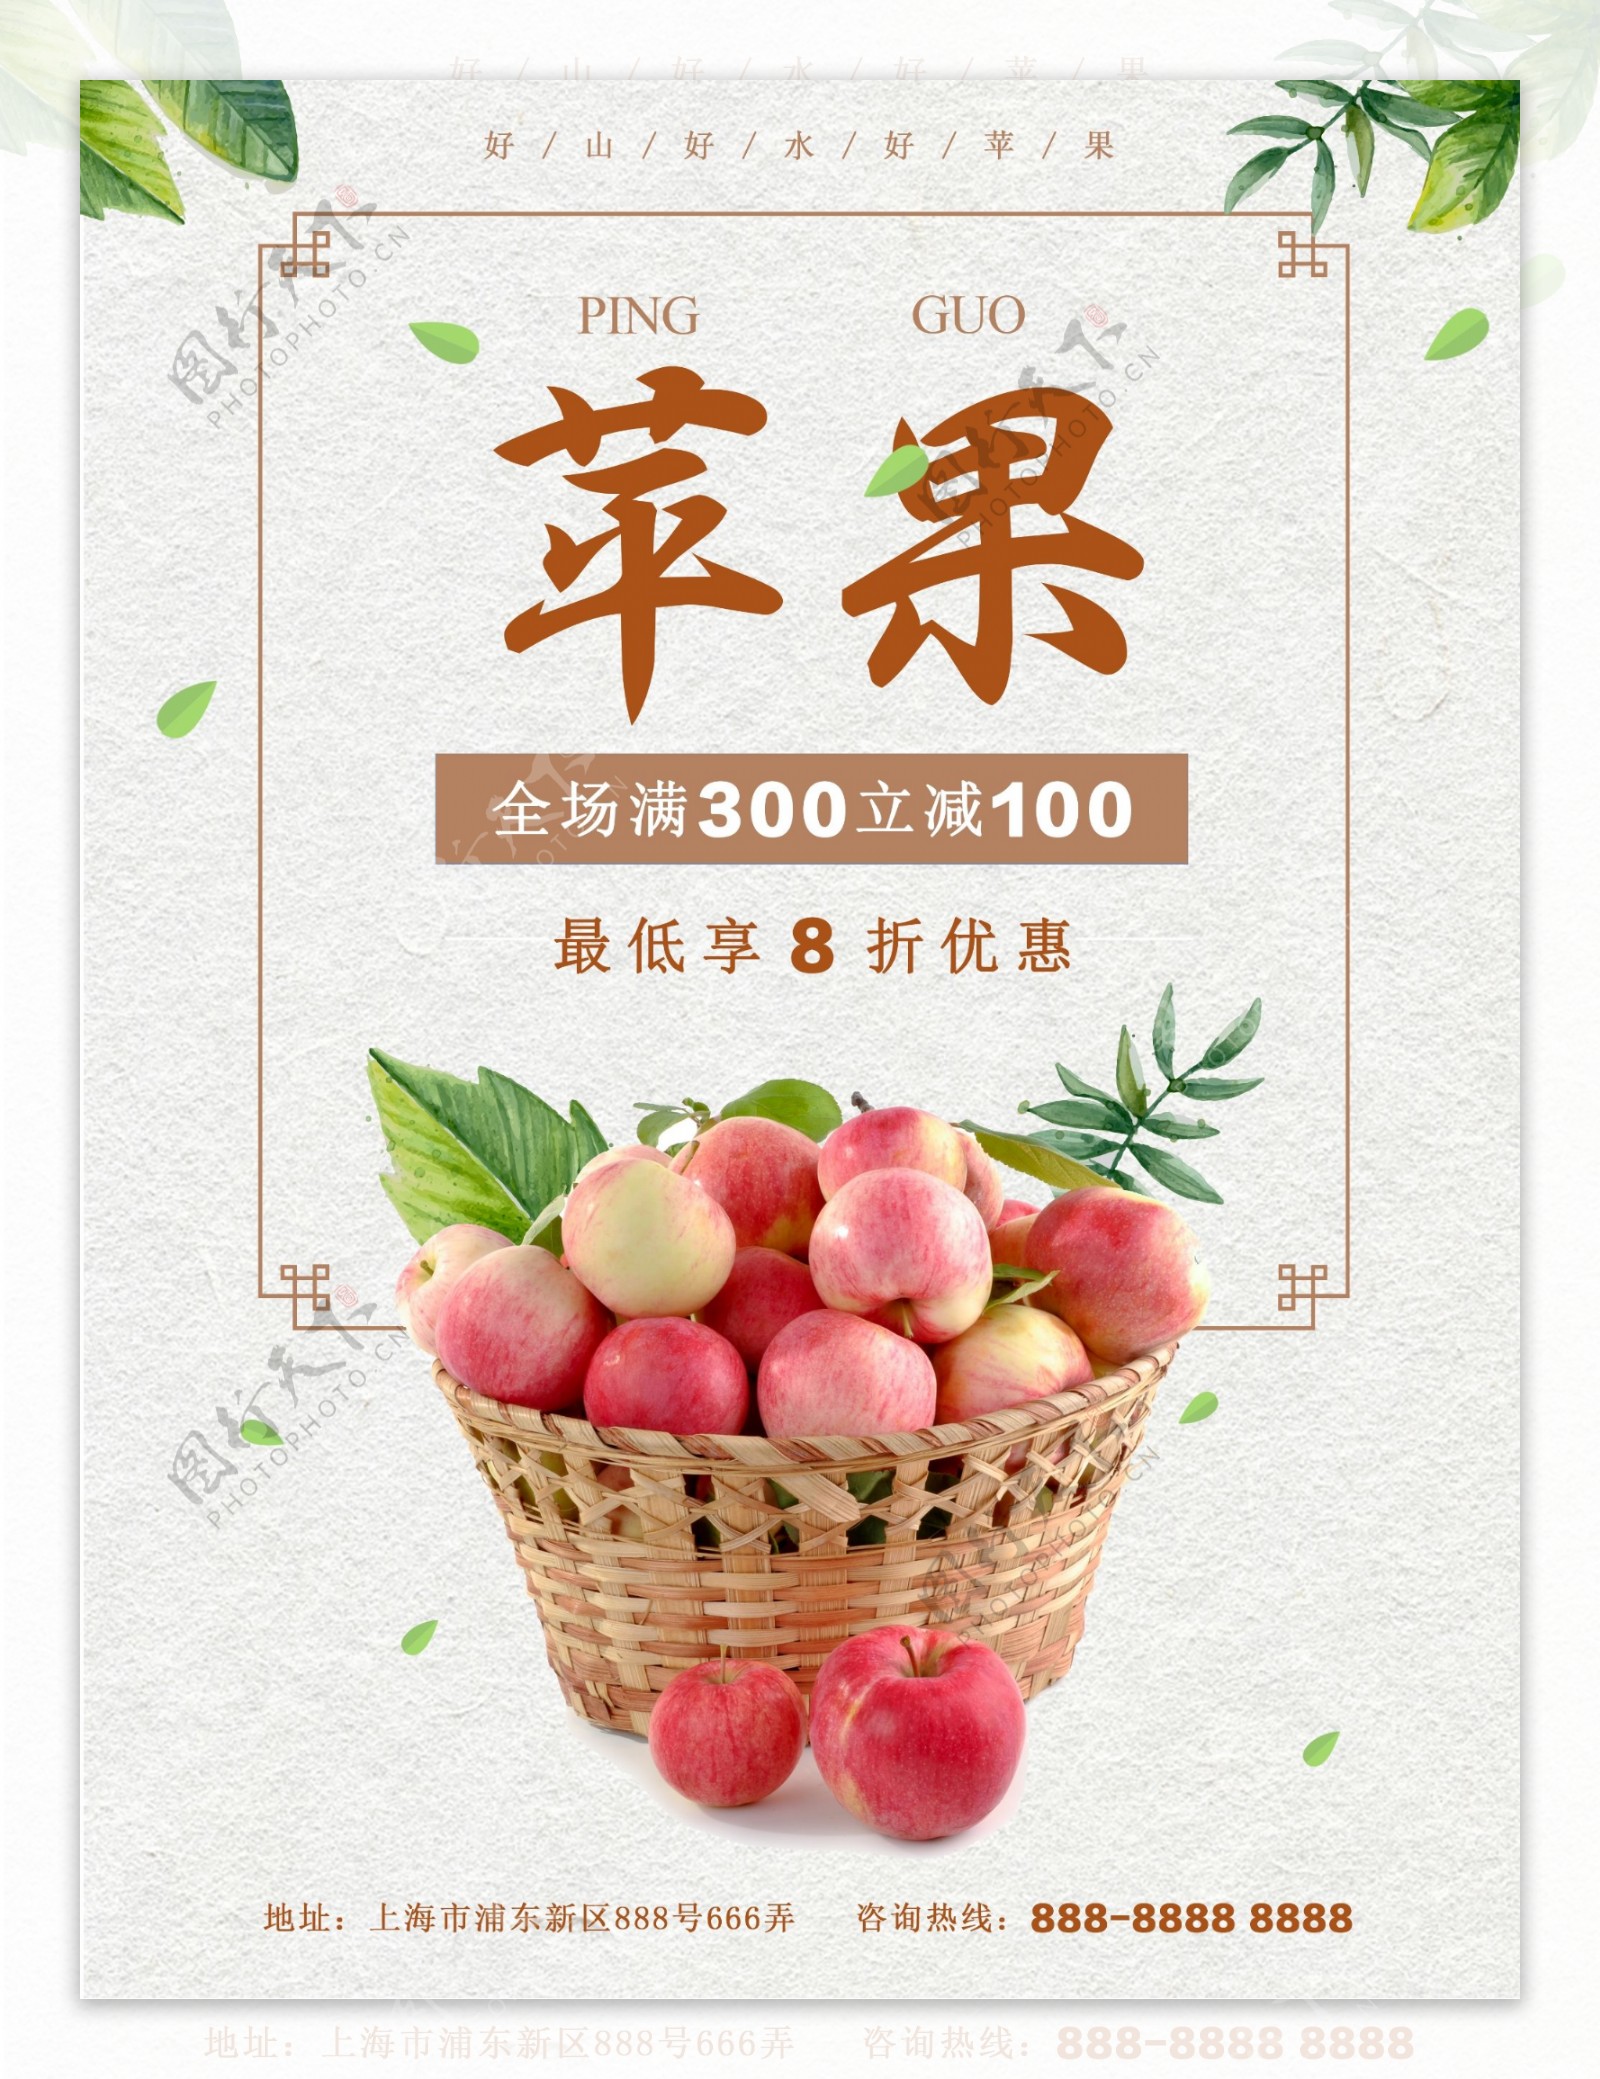 红色中国风秋季促销水果店苹果促销海报